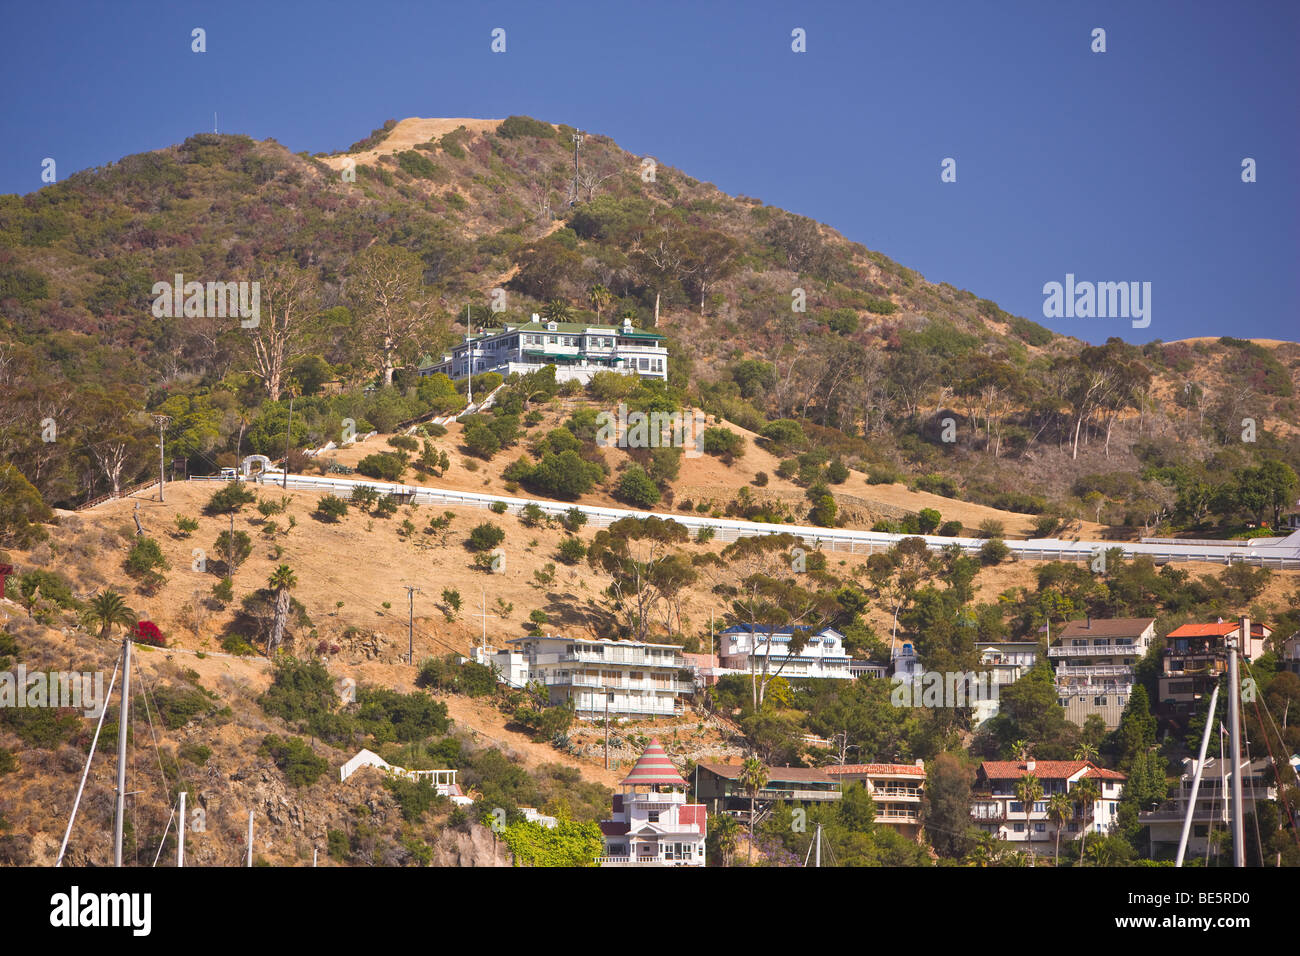 AVALON, CA, USA - Wrigley mansion, Santa Catalina Island Stock Photo